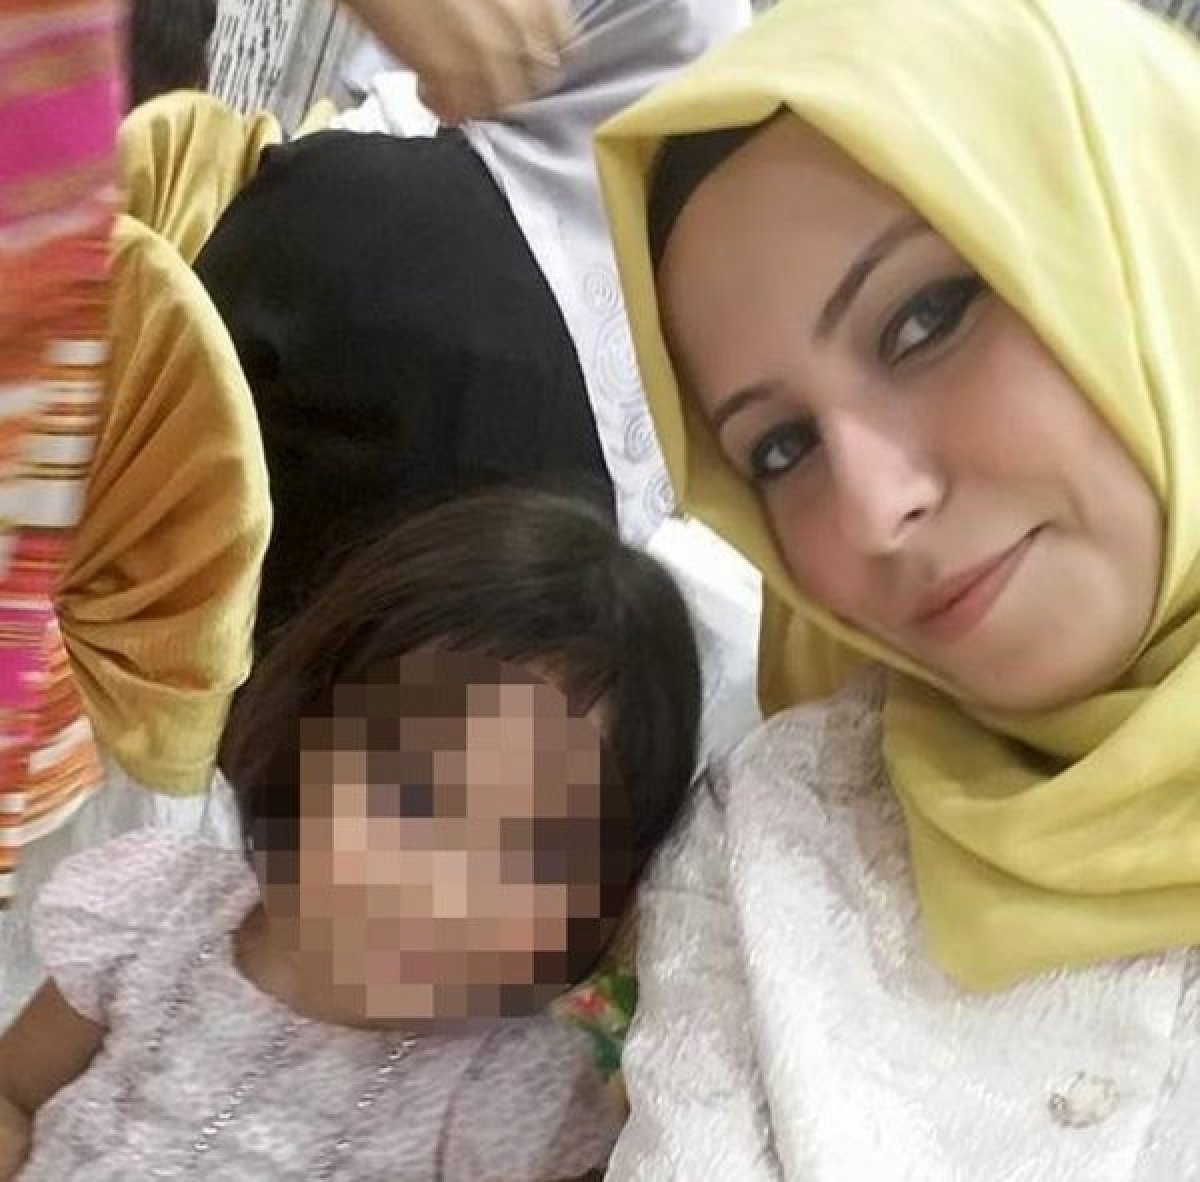 Arnavutköy de sevgilisini öldüren sanık, 25 yıl hapse mahkum edildi #3